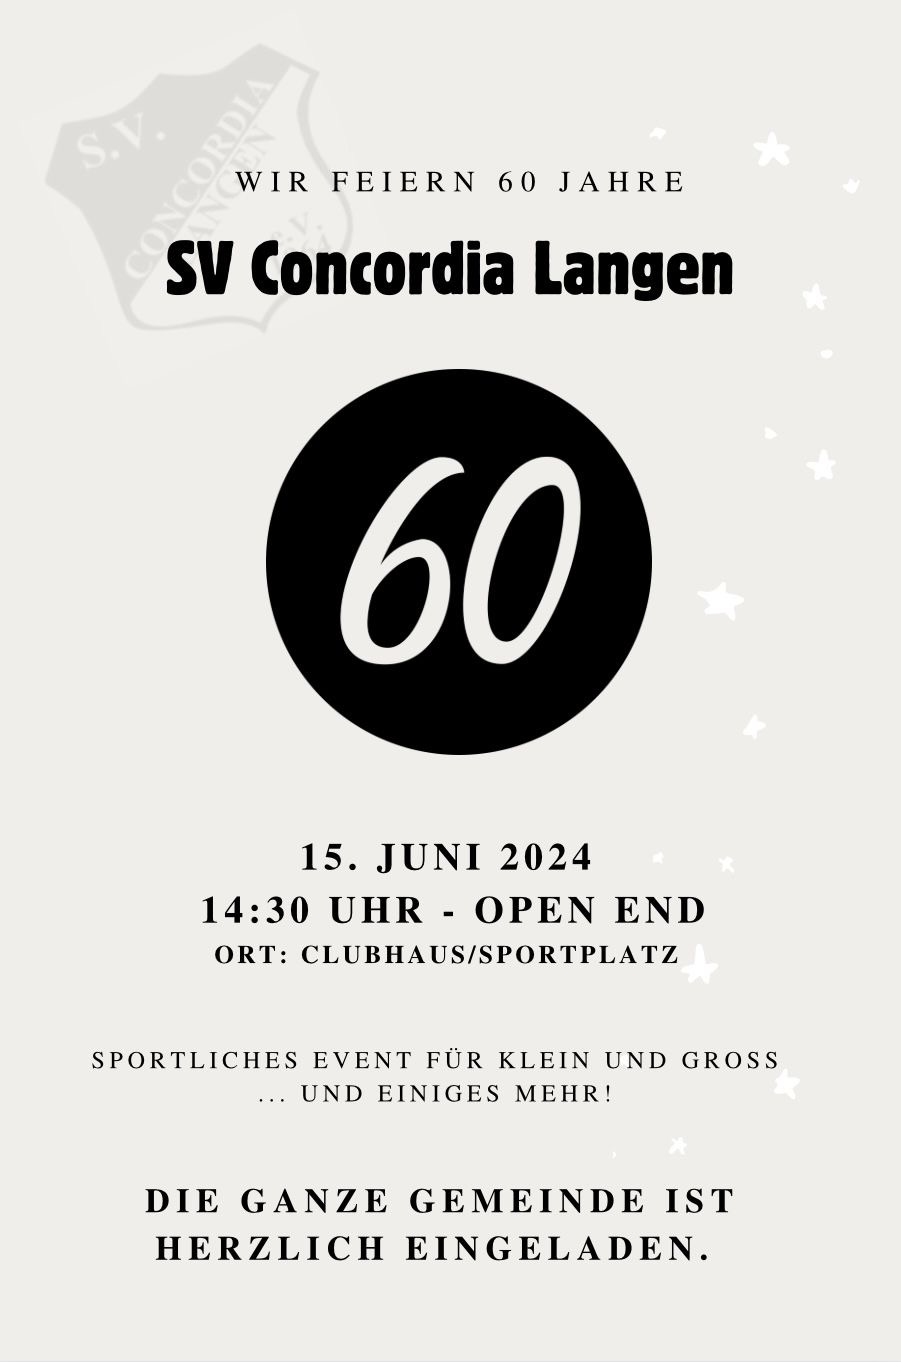 Wir feiern 60 Jahre SV Concordia Langen